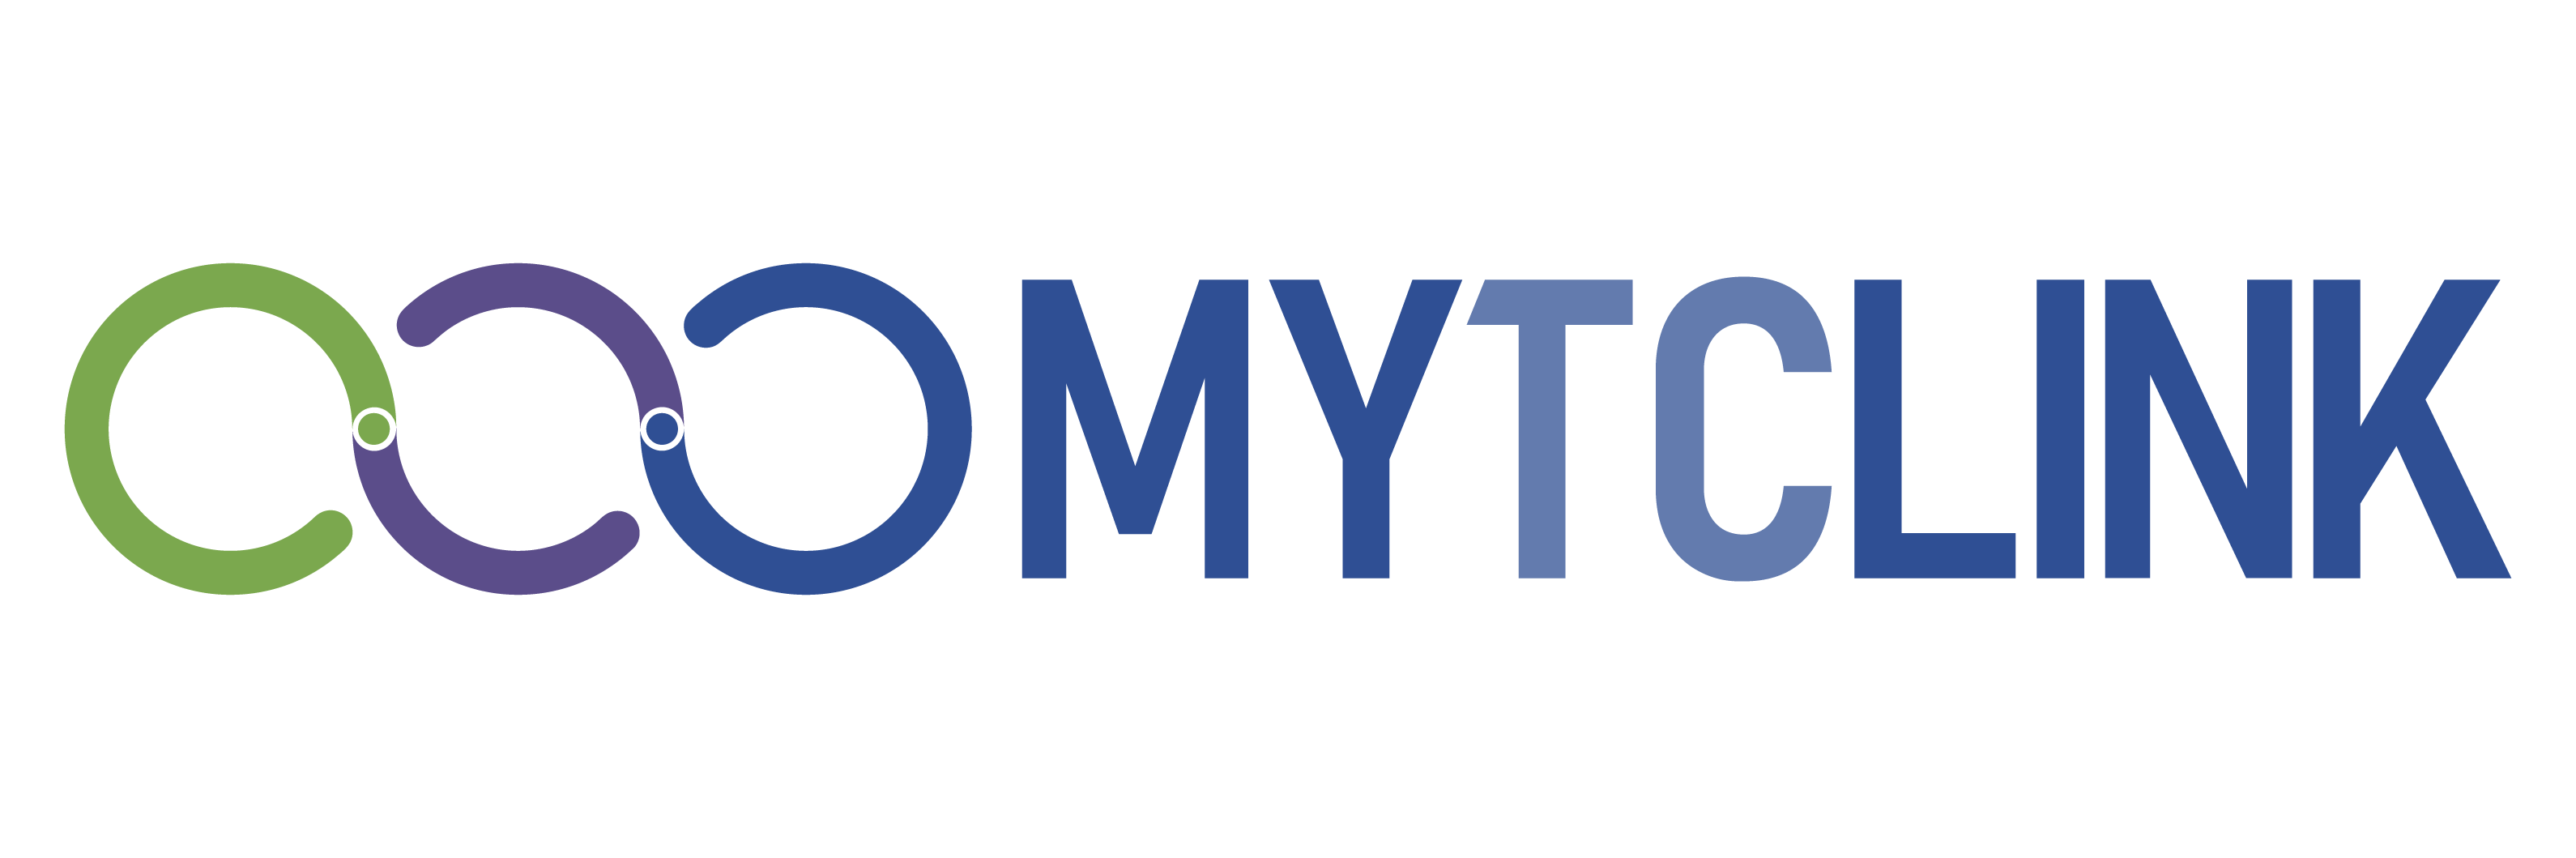 MYTCLINK logo